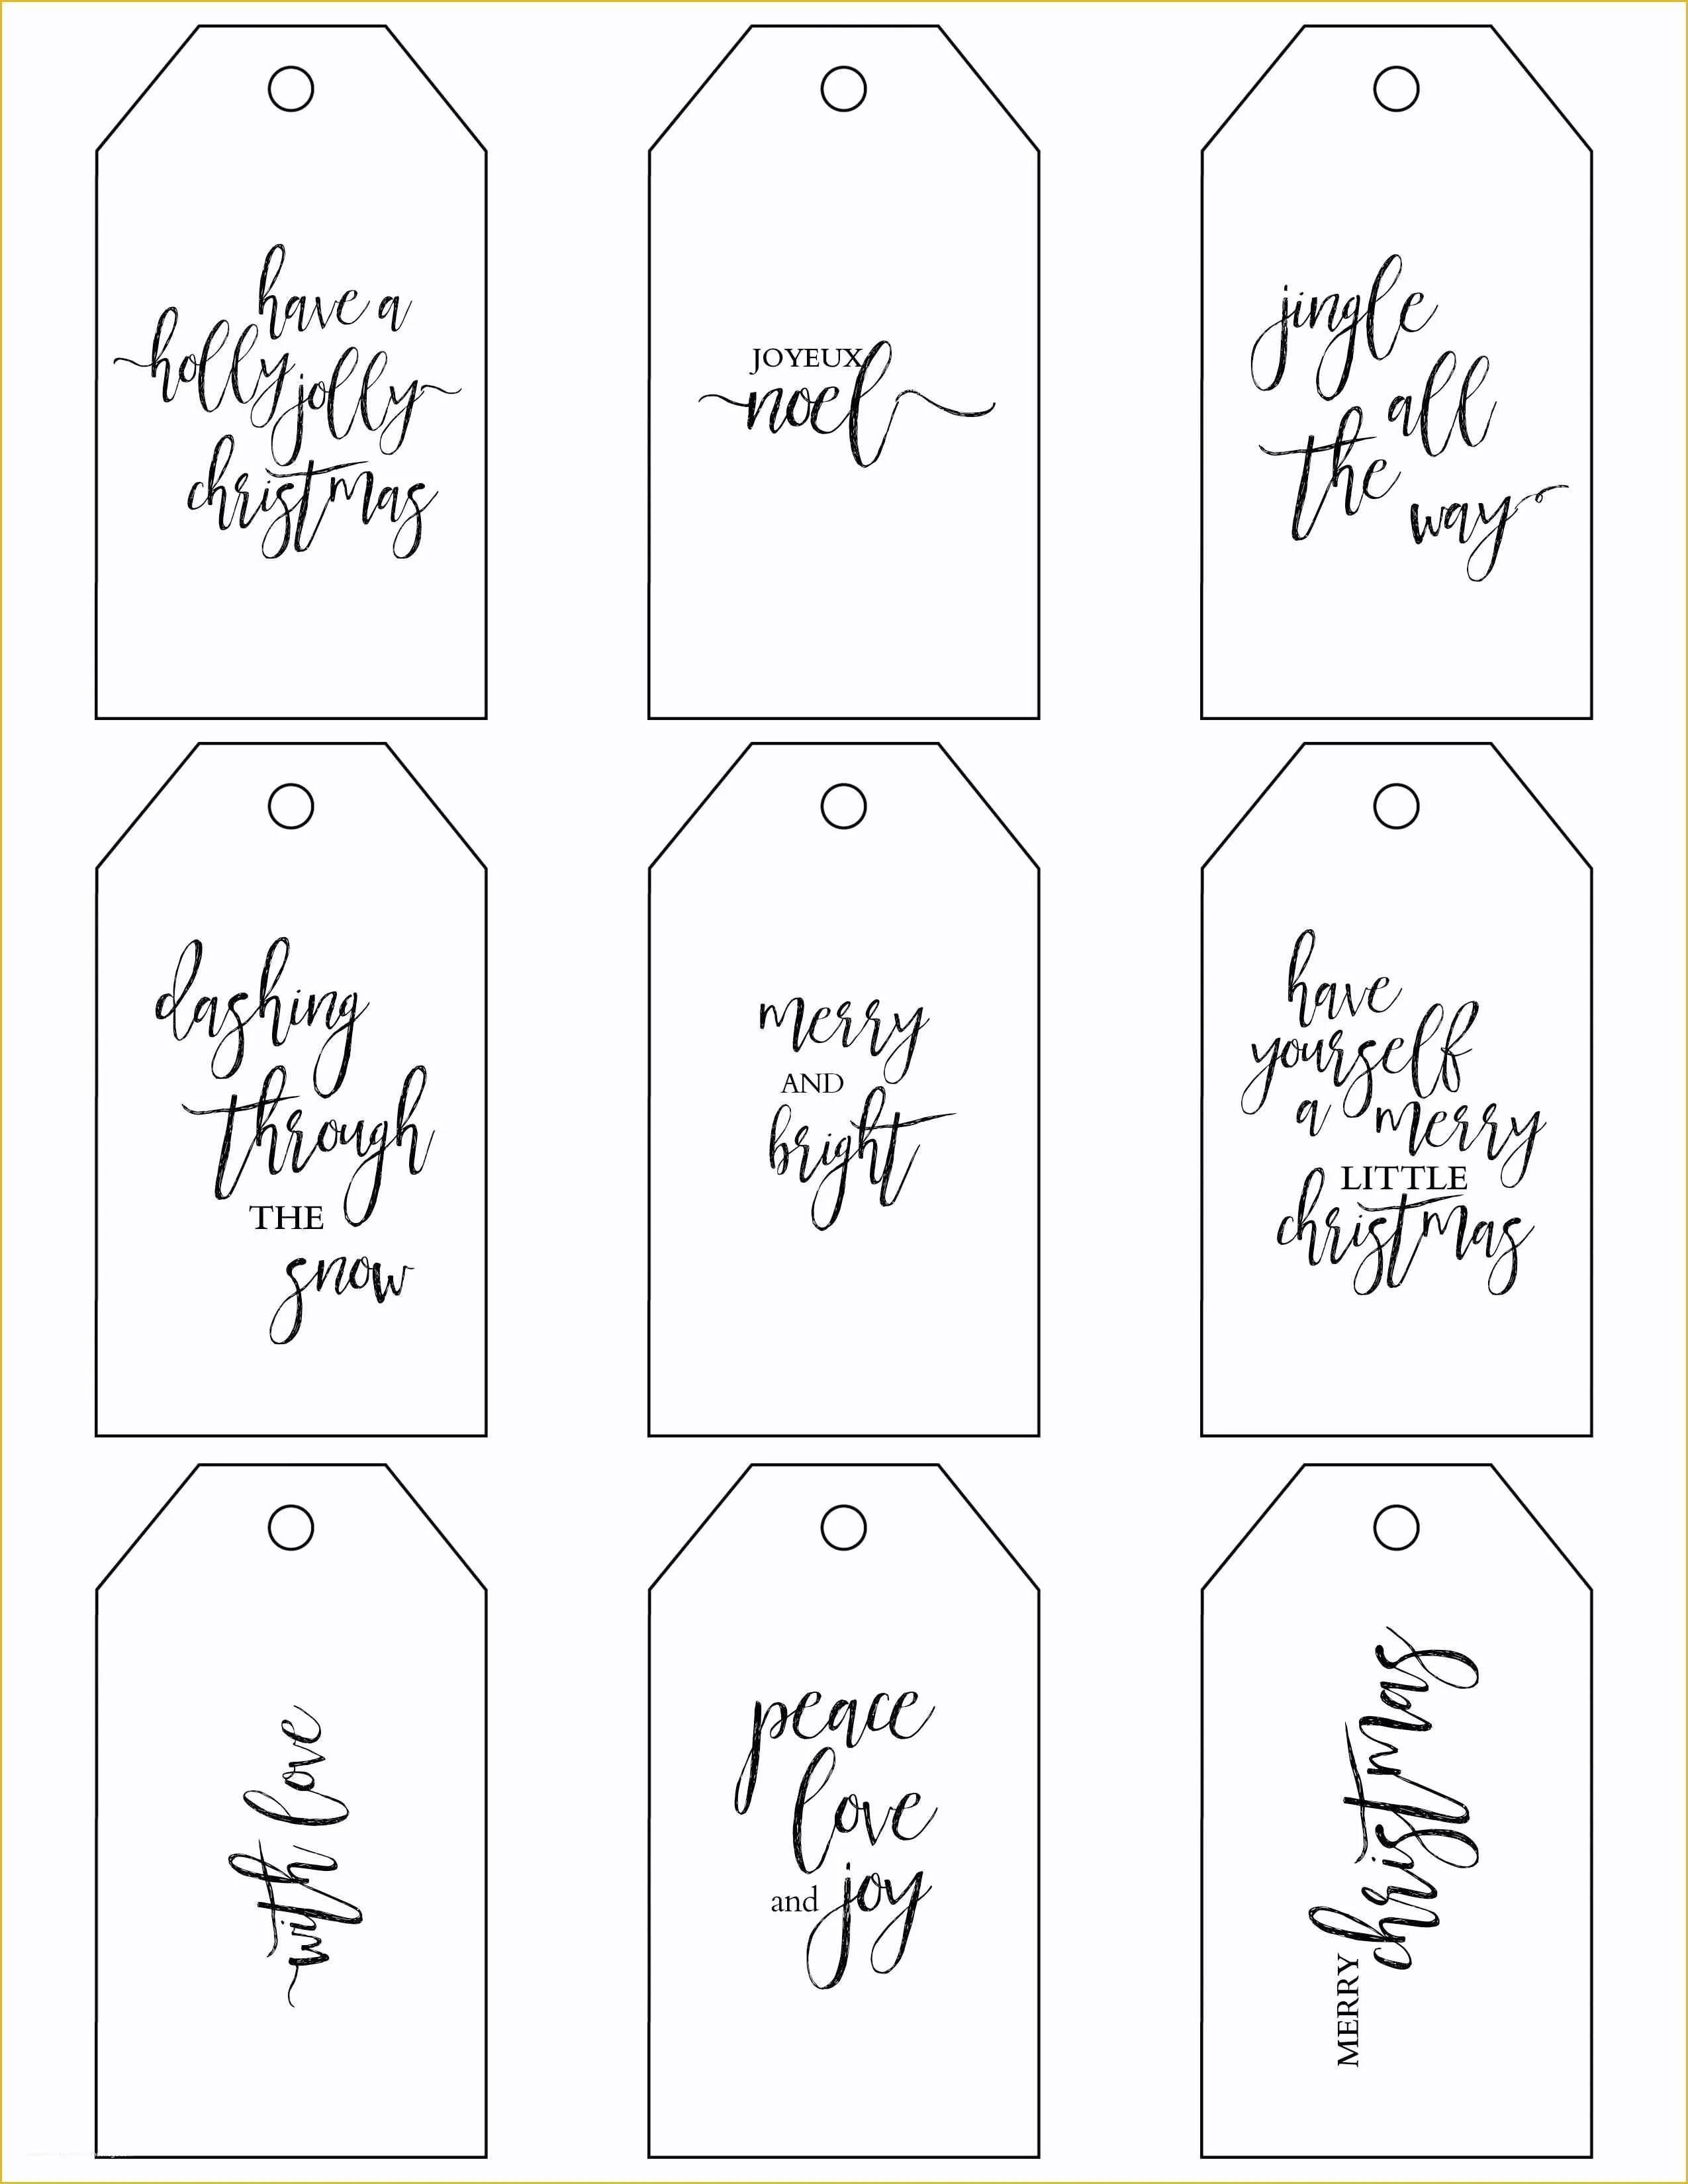 Free Printable Gift Tags Templates Of Printable Christmas Gift Tags Make Holiday Wrapping Simple